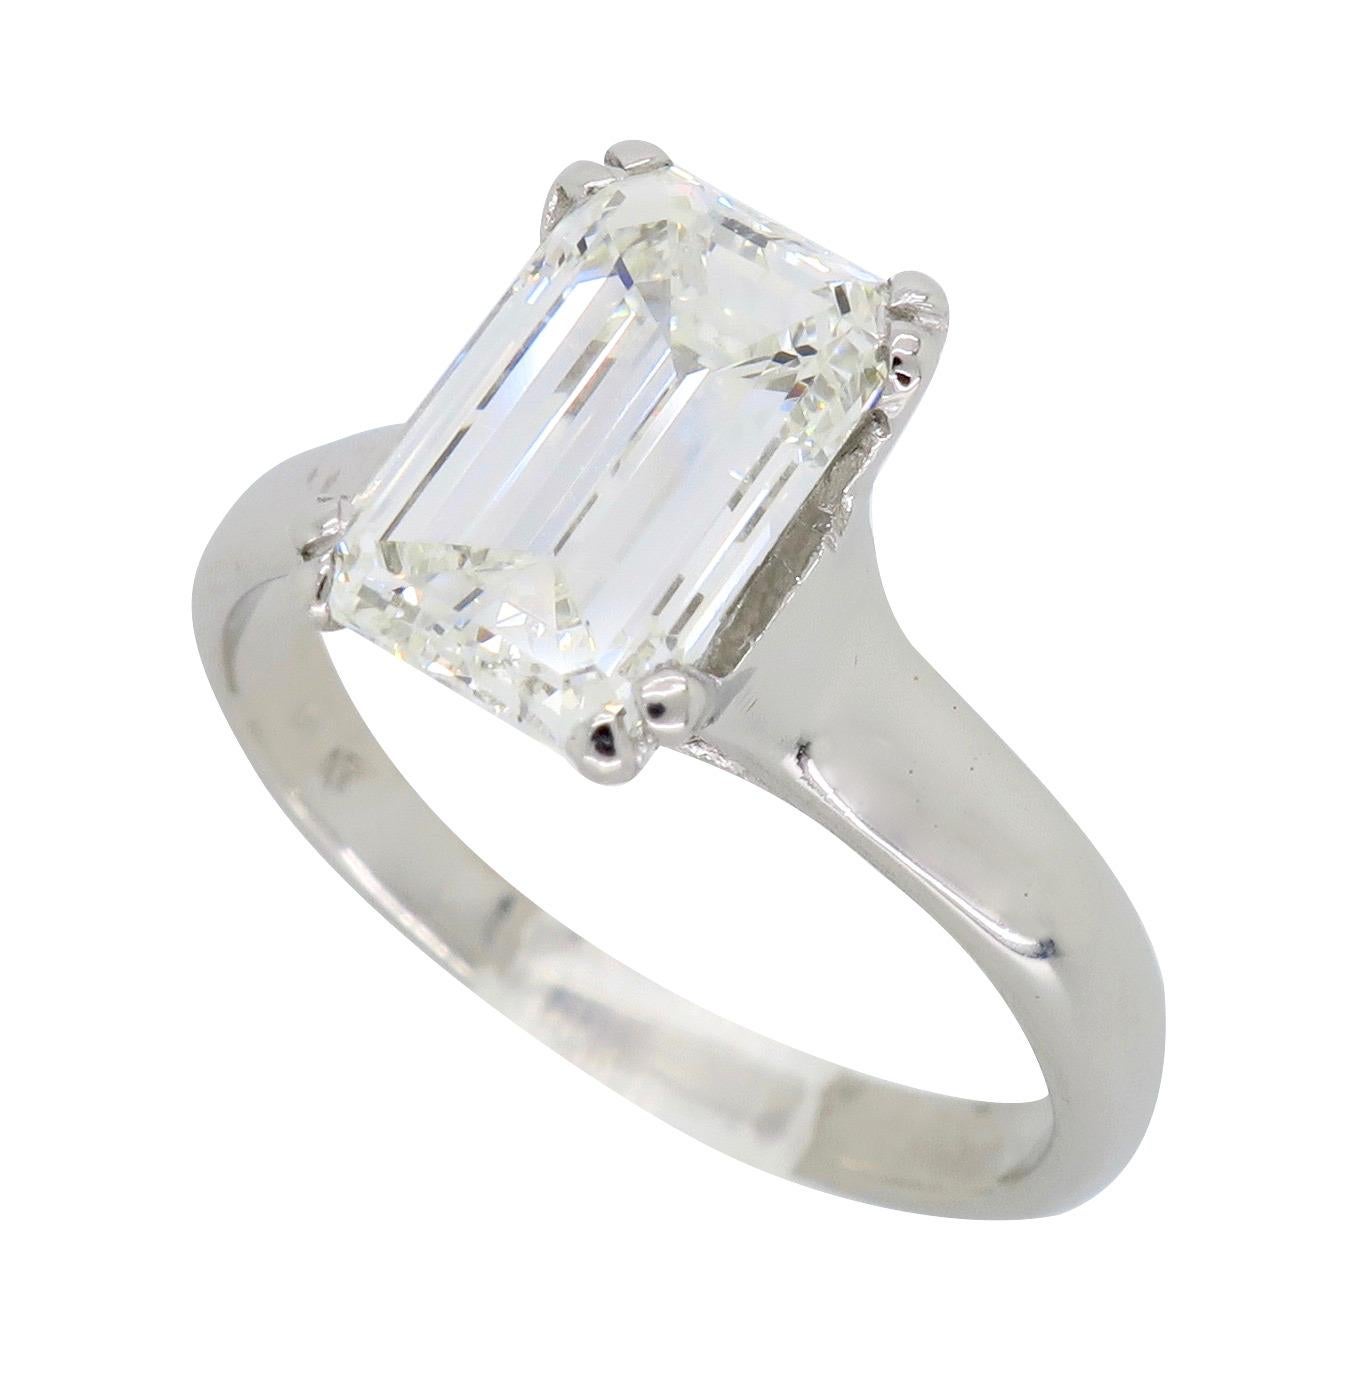 2.00 Carat Emerald Cut Diamond Solitaire Engagement Ring in Platinum 2